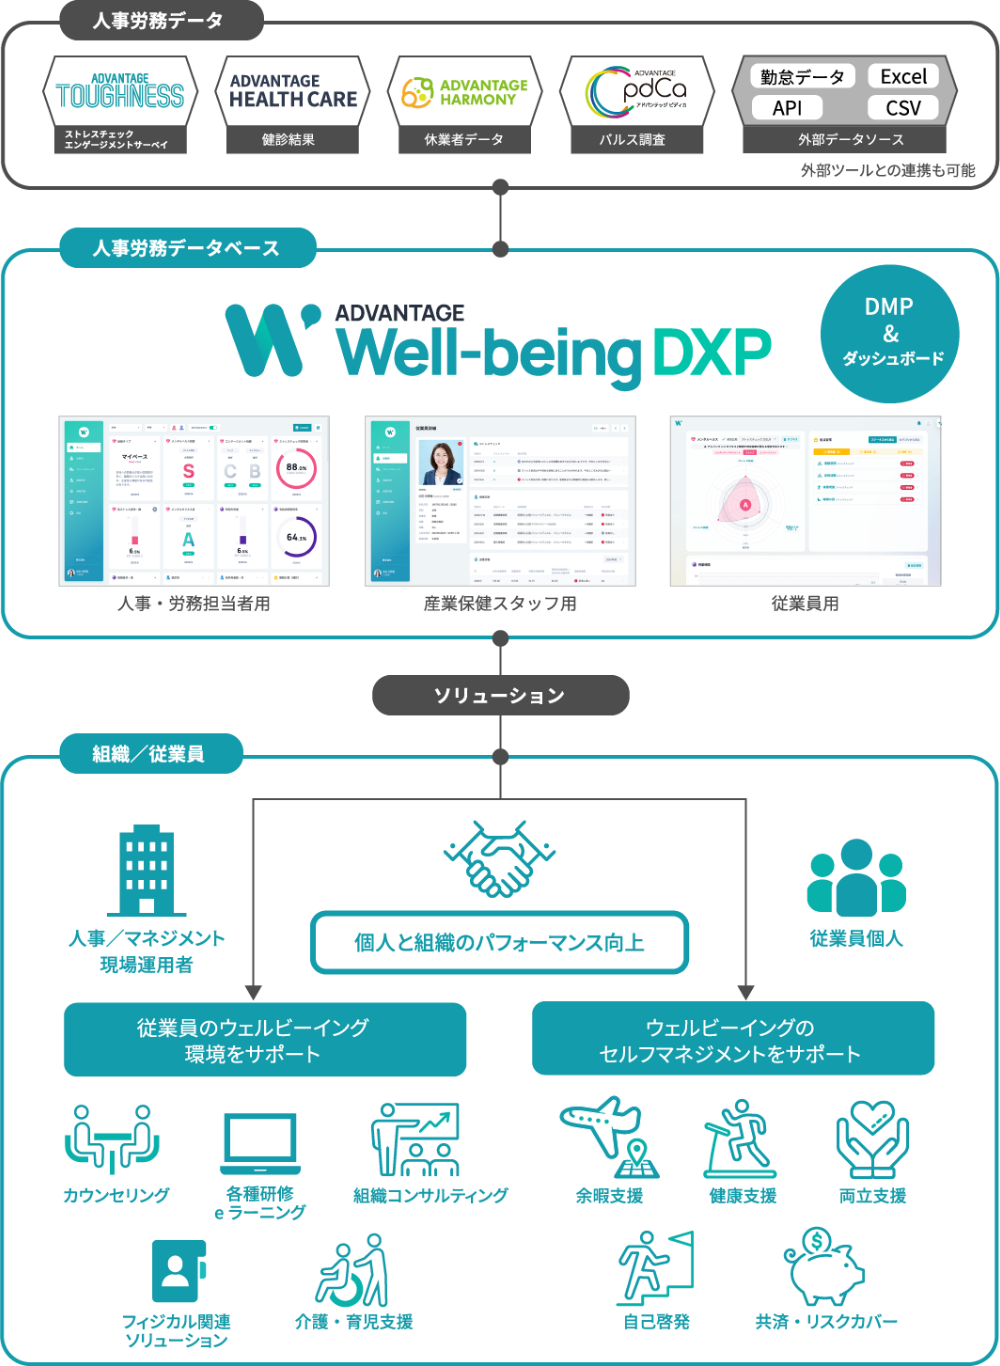 ADVANTEGE Well-being DXプラットフォームとアドバンテッジソリューションの一覧